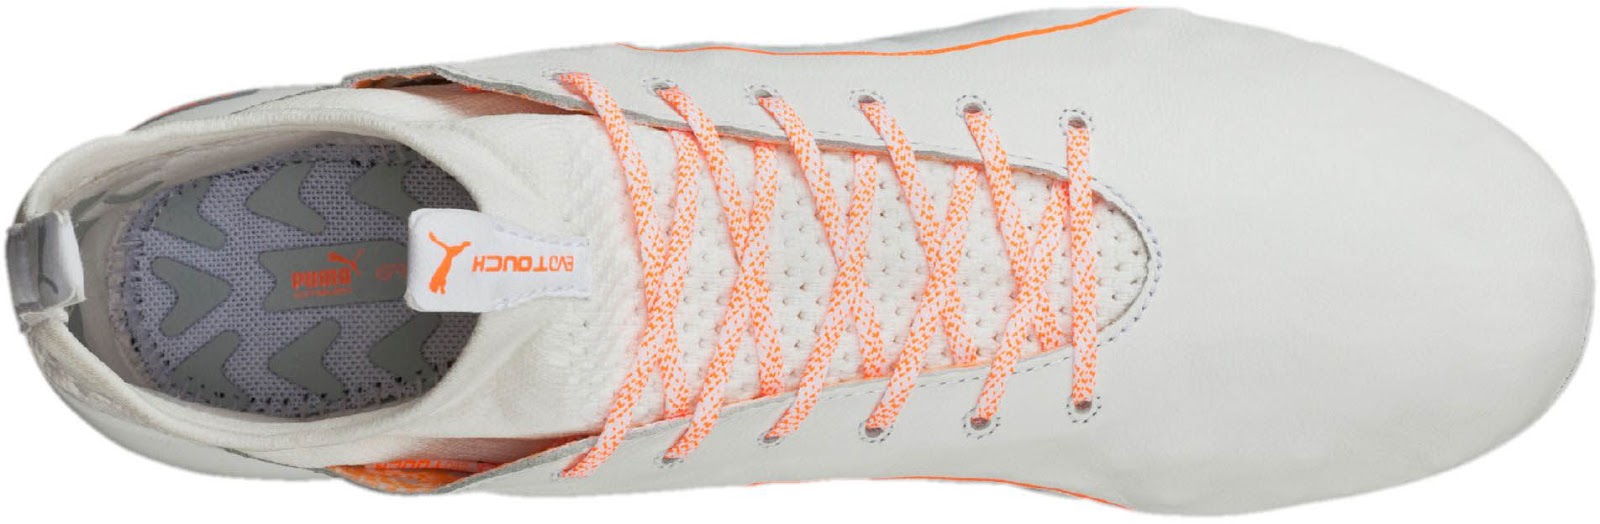 white-orange-puma-evotouch-2016-17-boots overhead